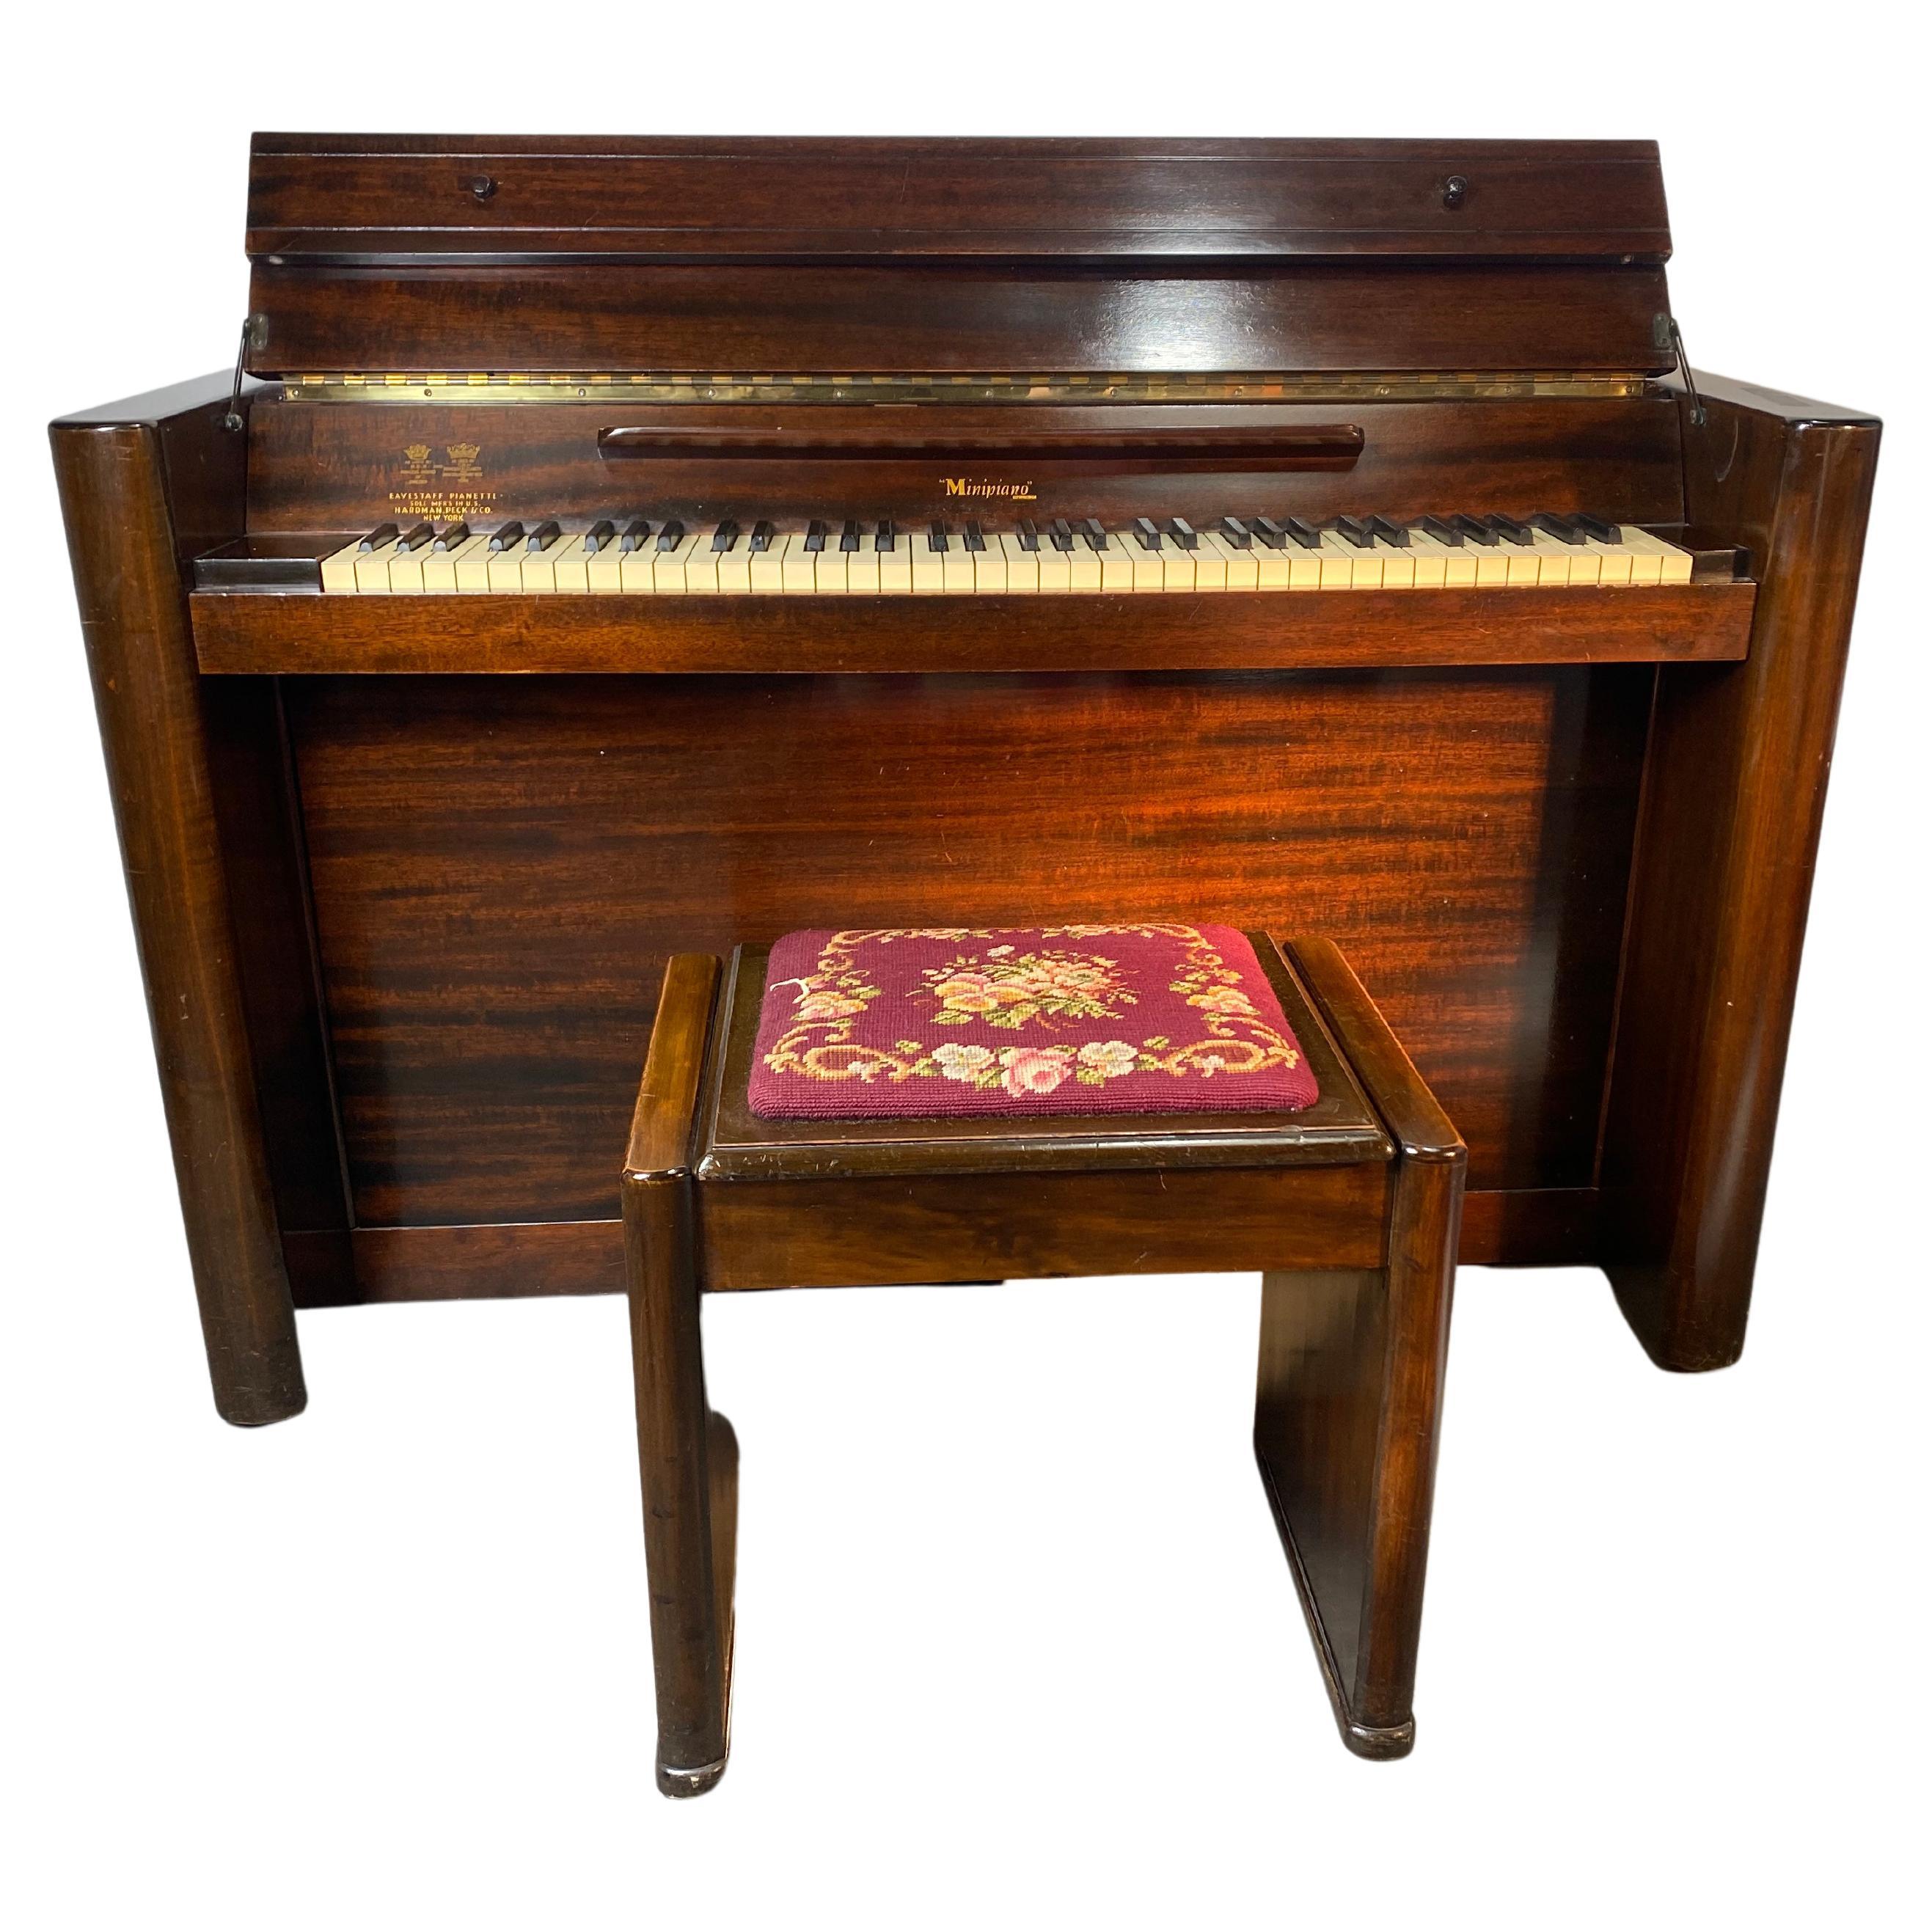 Seldom Seen 1930's Art Deco "Minipiano" Pianette by Eavestaff